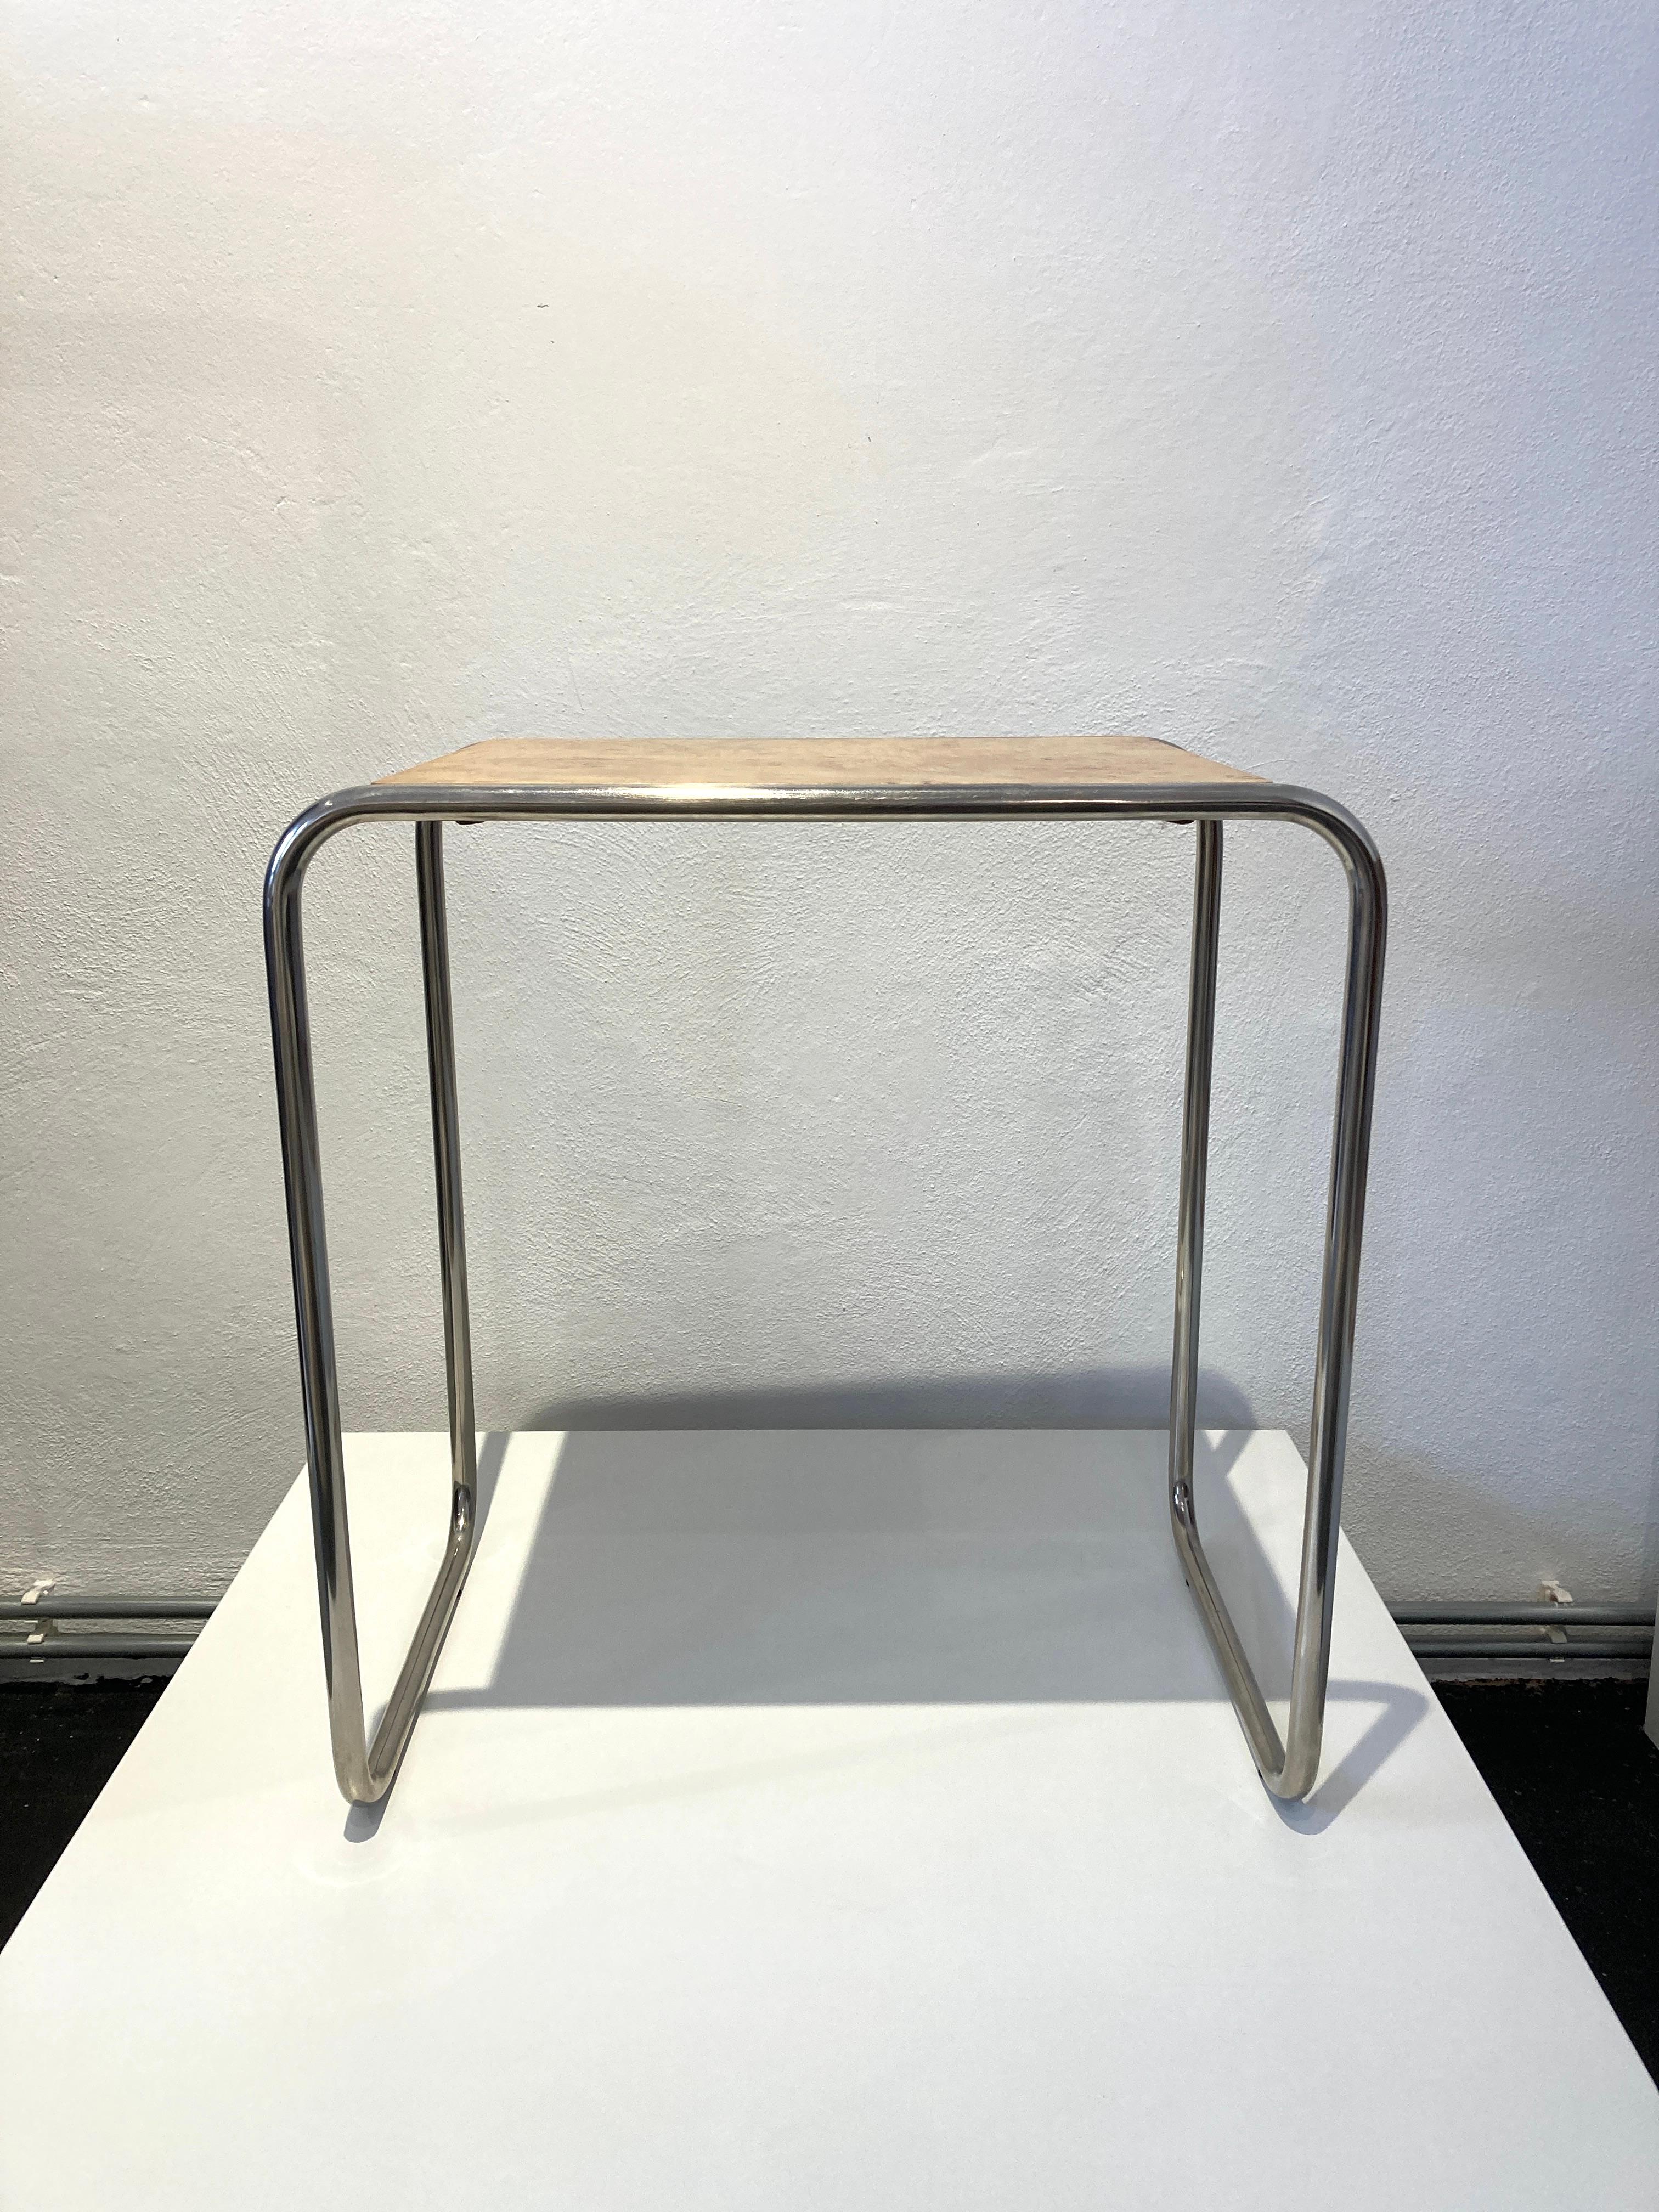 röhrenförmiger Stahltisch B 9 von Marcel Breuer, 1930er Jahre
Dieser Beistelltisch von Marcel Breuer hat eine Konstruktion aus vernickeltem Stahlrohr
und einer birkenfurnierten Platte. Sehr guter Zustand.
        